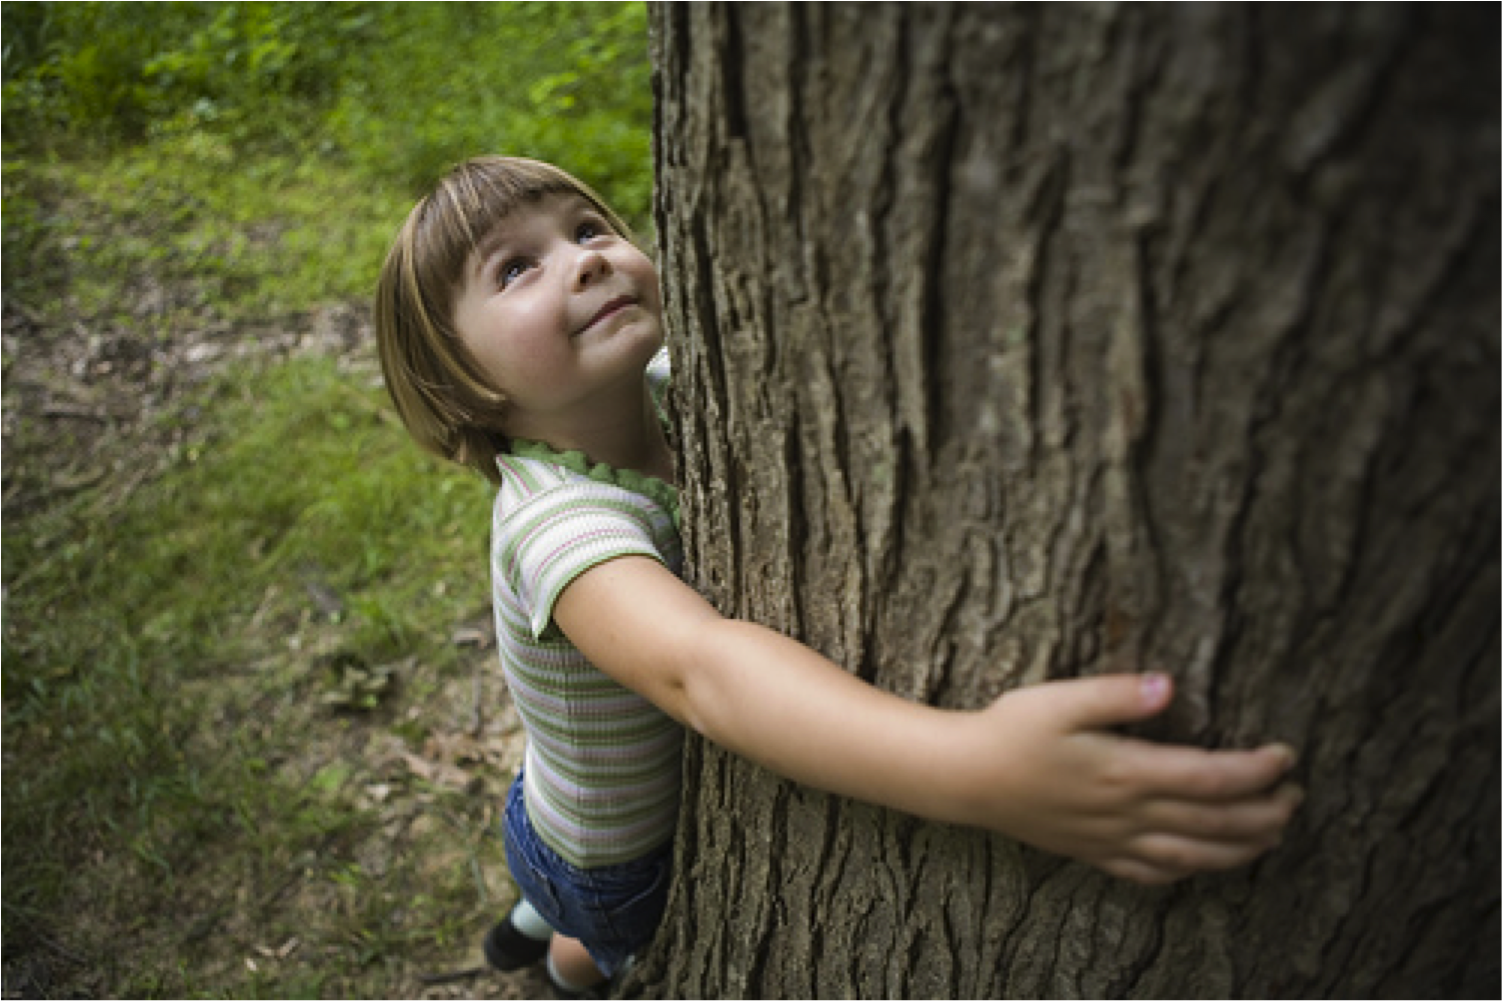 Дерево для детей. Дети и природа. Природа деревьев для детей. Любовь детей к природе. I go to nature